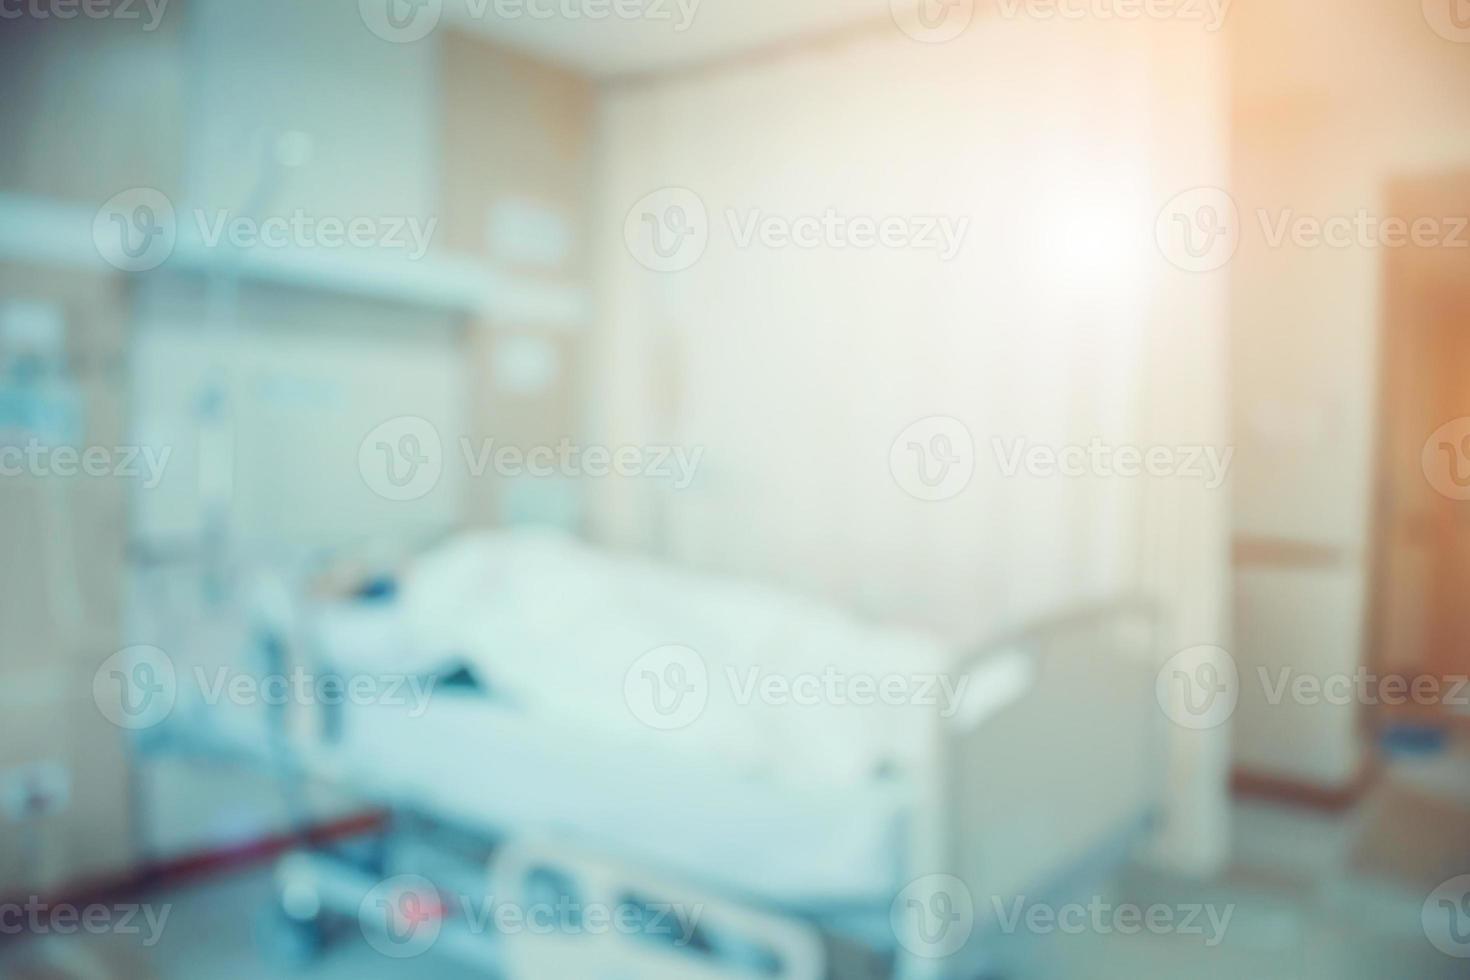 abstrakter krankenhausinnenraum mit bettunschärfehintergrund foto